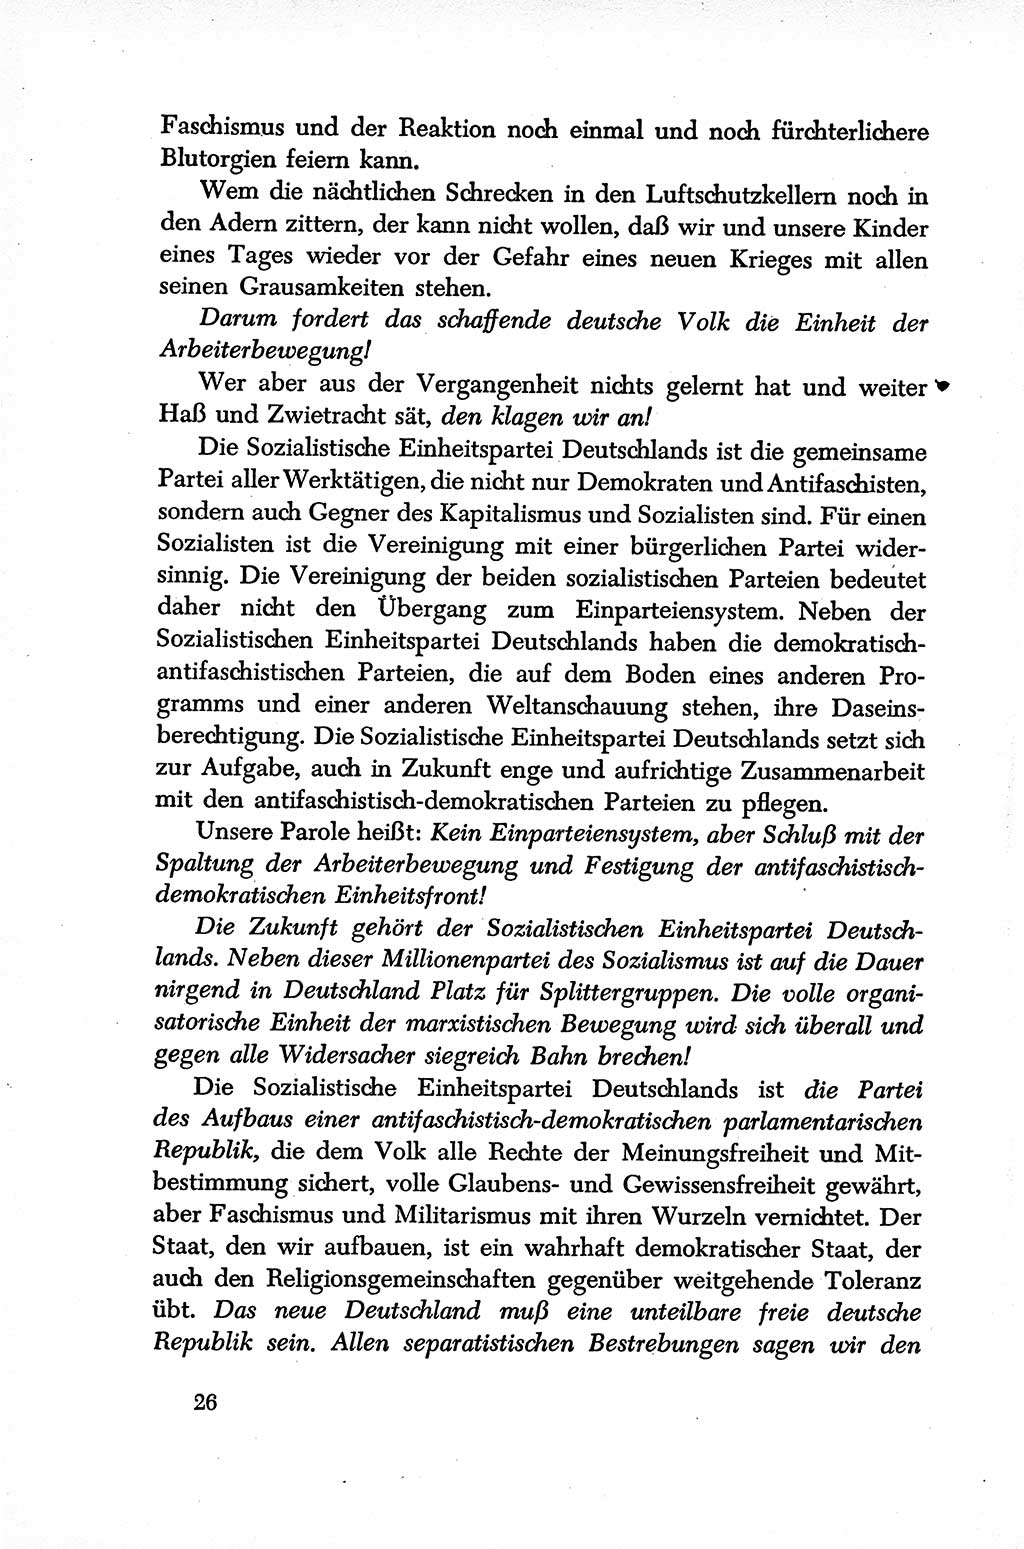 Dokumente der Sozialistischen Einheitspartei Deutschlands (SED) [Sowjetische Besatzungszone (SBZ) Deutschlands] 1946-1948, Seite 26 (Dok. SED SBZ Dtl. 1946-1948, S. 26)